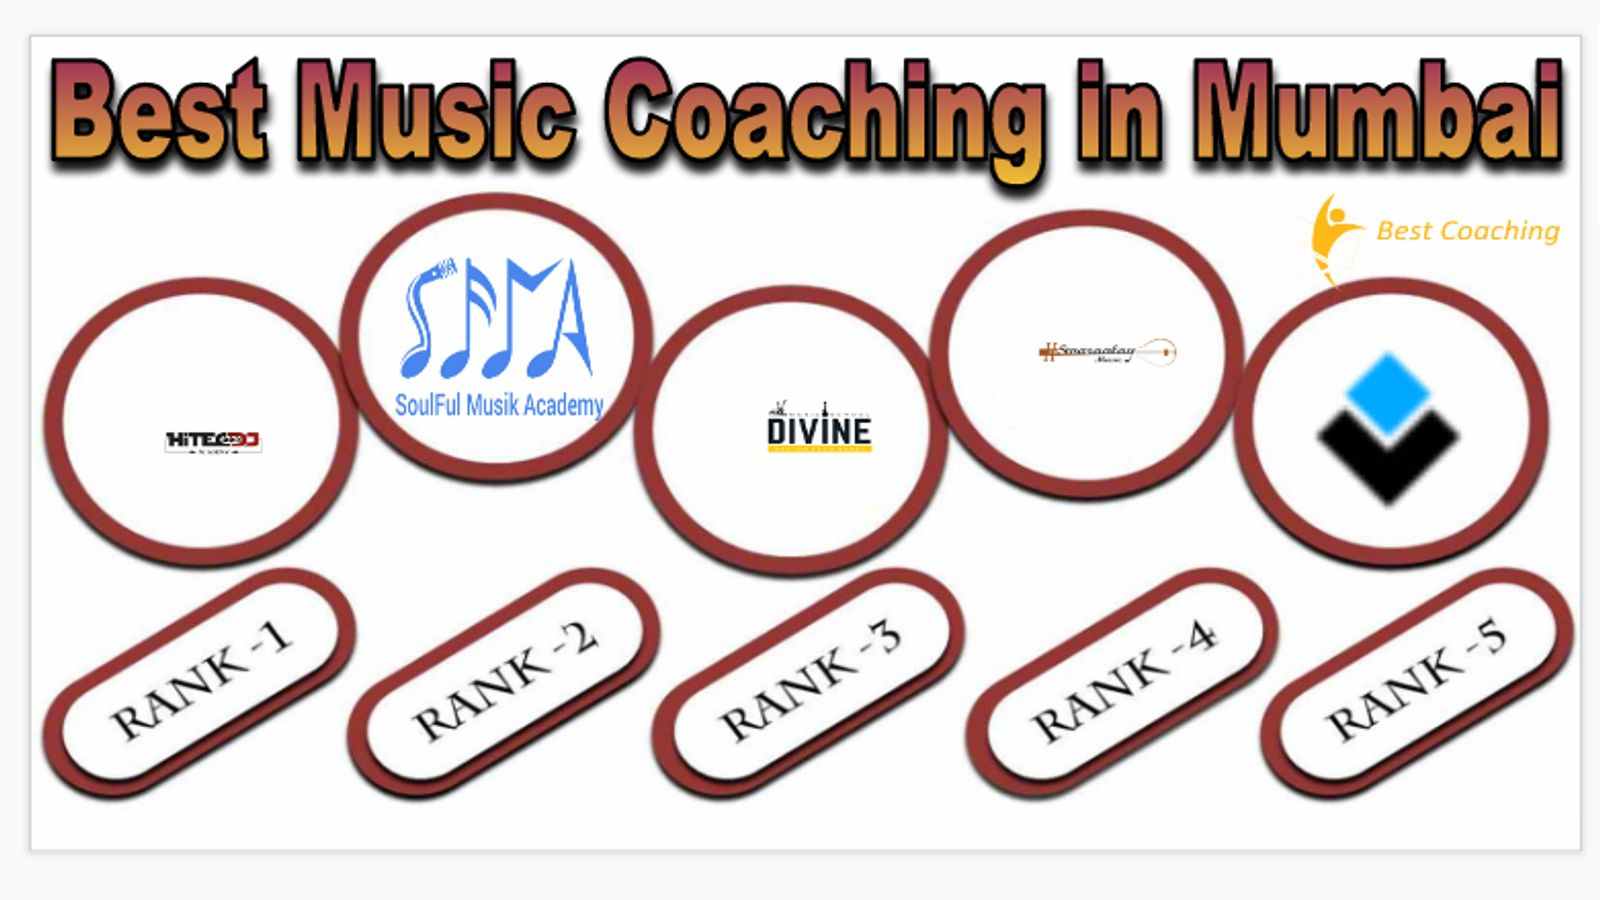 Best Music Coaching in Mumbai